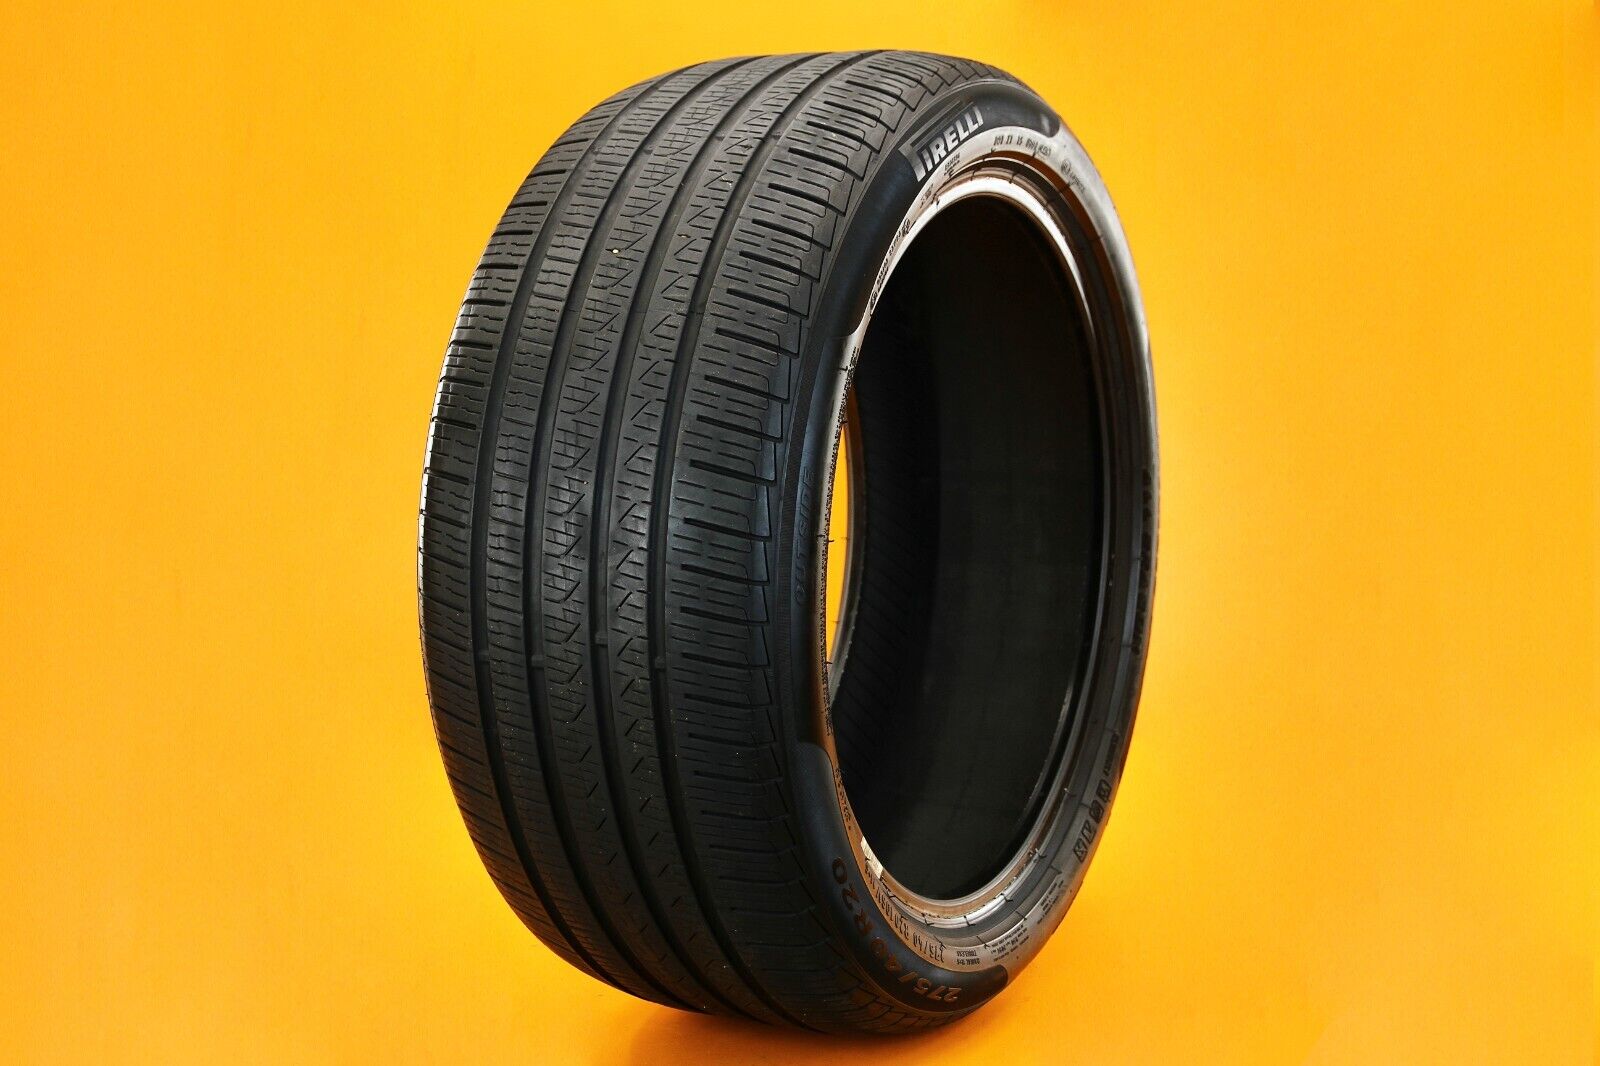 Pirelli Cinturato P7 106V 275/40R20 275 40 20 Single Spare Tire 7/32nds #1246-1